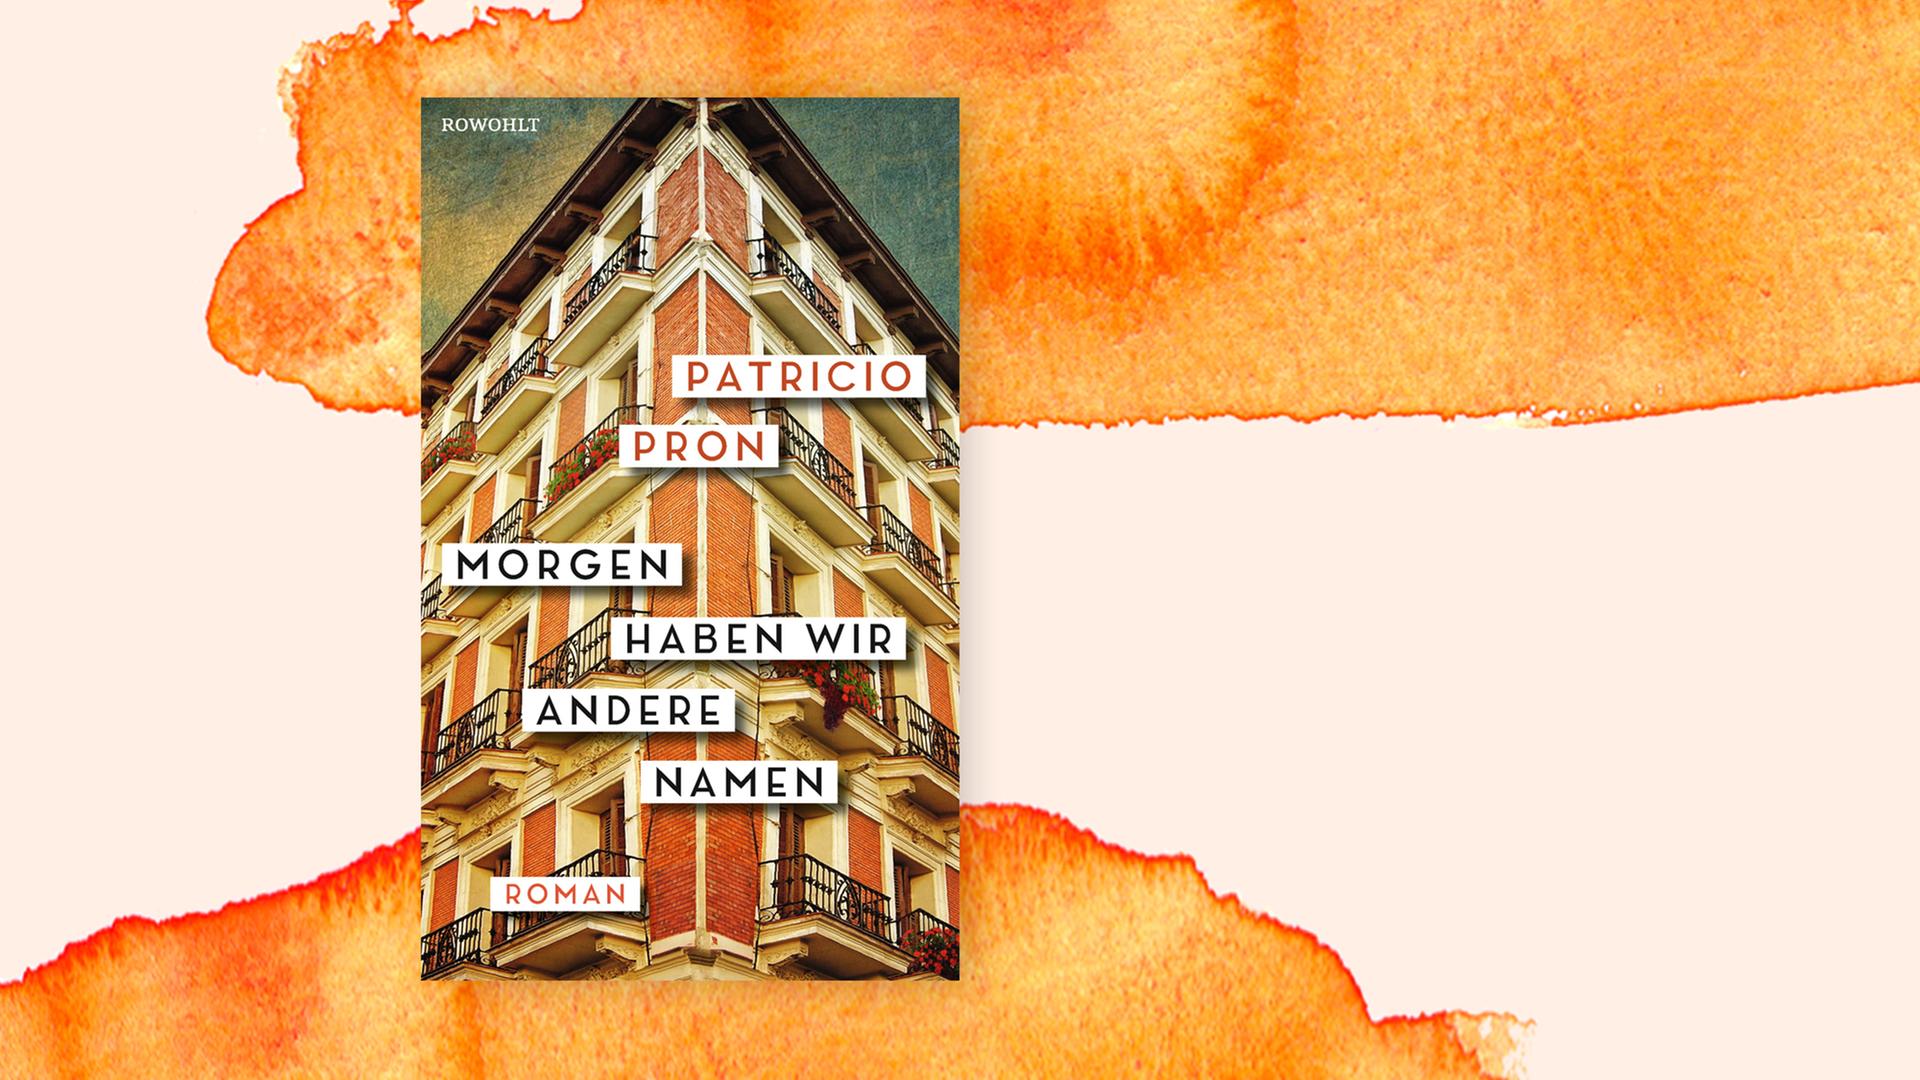 Das Cover von Patricio Prons "Morgen haben wir andere Namen" auf orangefarbenem Pastell-Hintergrund.